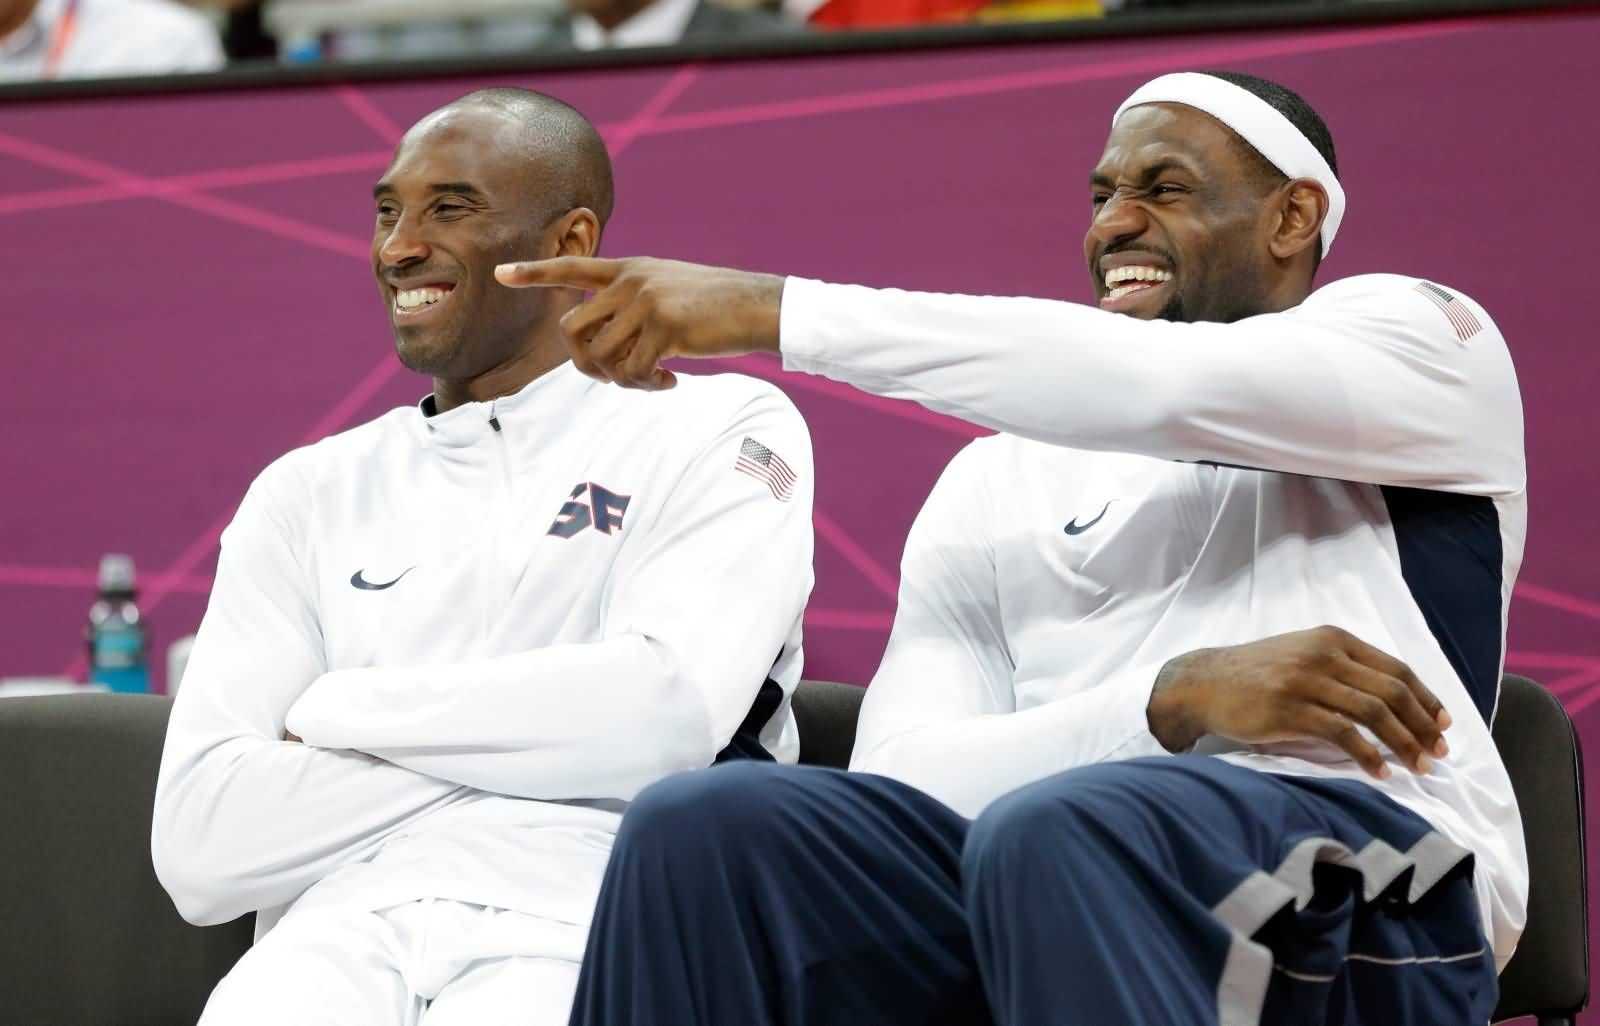 “Pas même dans mon top 10”: l’ancien champion de la NBA fait une déclaration bizarre autour de Kobe Bryant et LeBron James